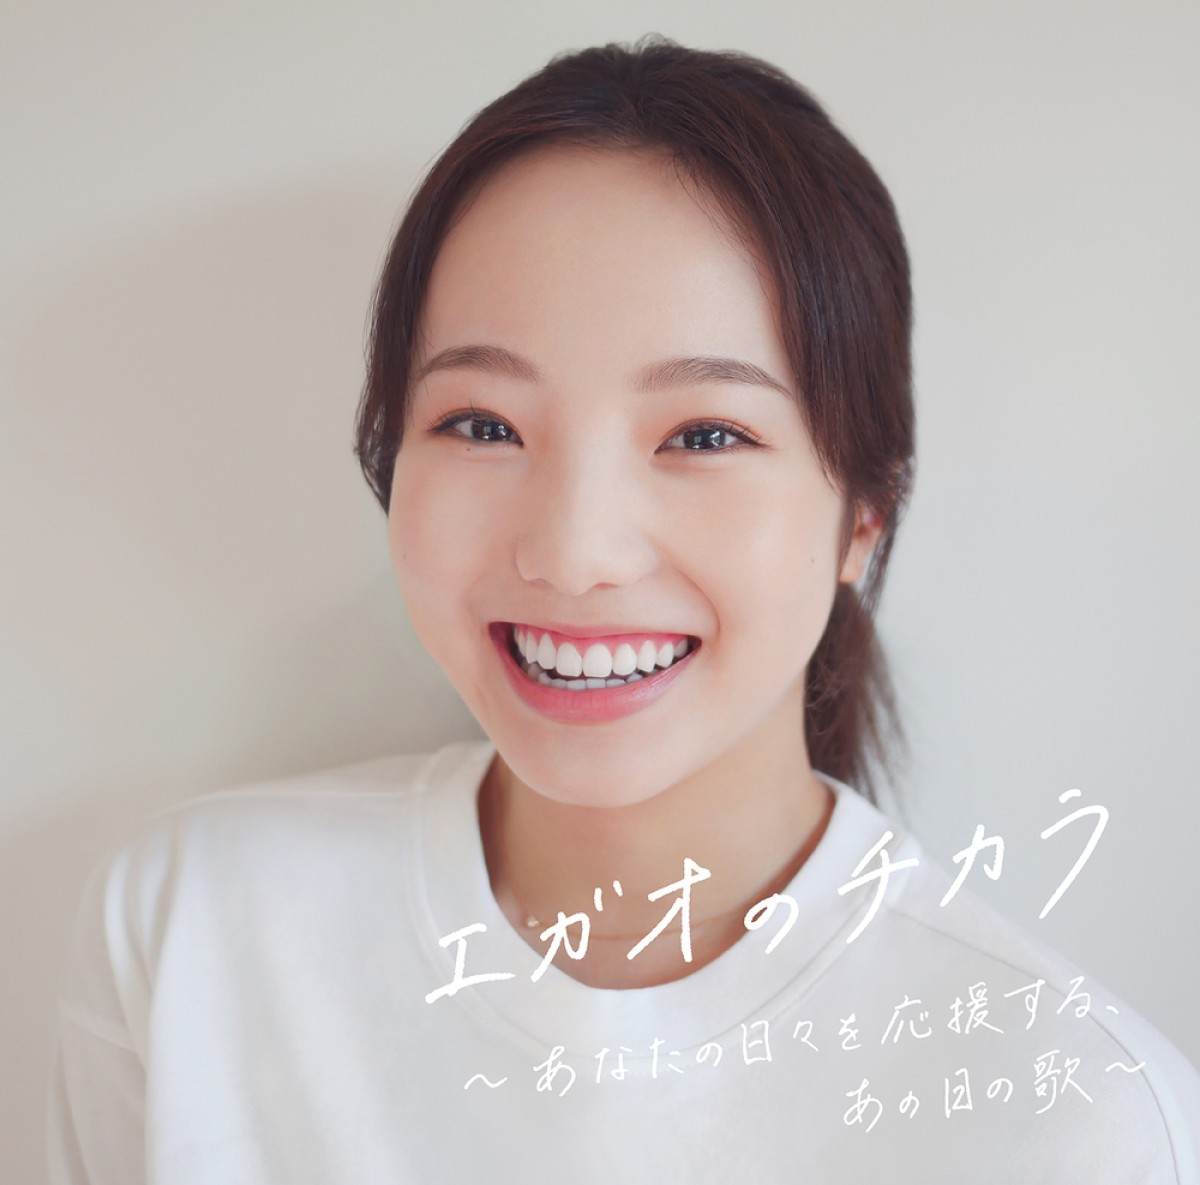 本田真凜の写真が使用された、コンピレーションアルバム『エガオのチカラ～あなたの日々を応援する、あの日の歌～』ジャケットビジュアル